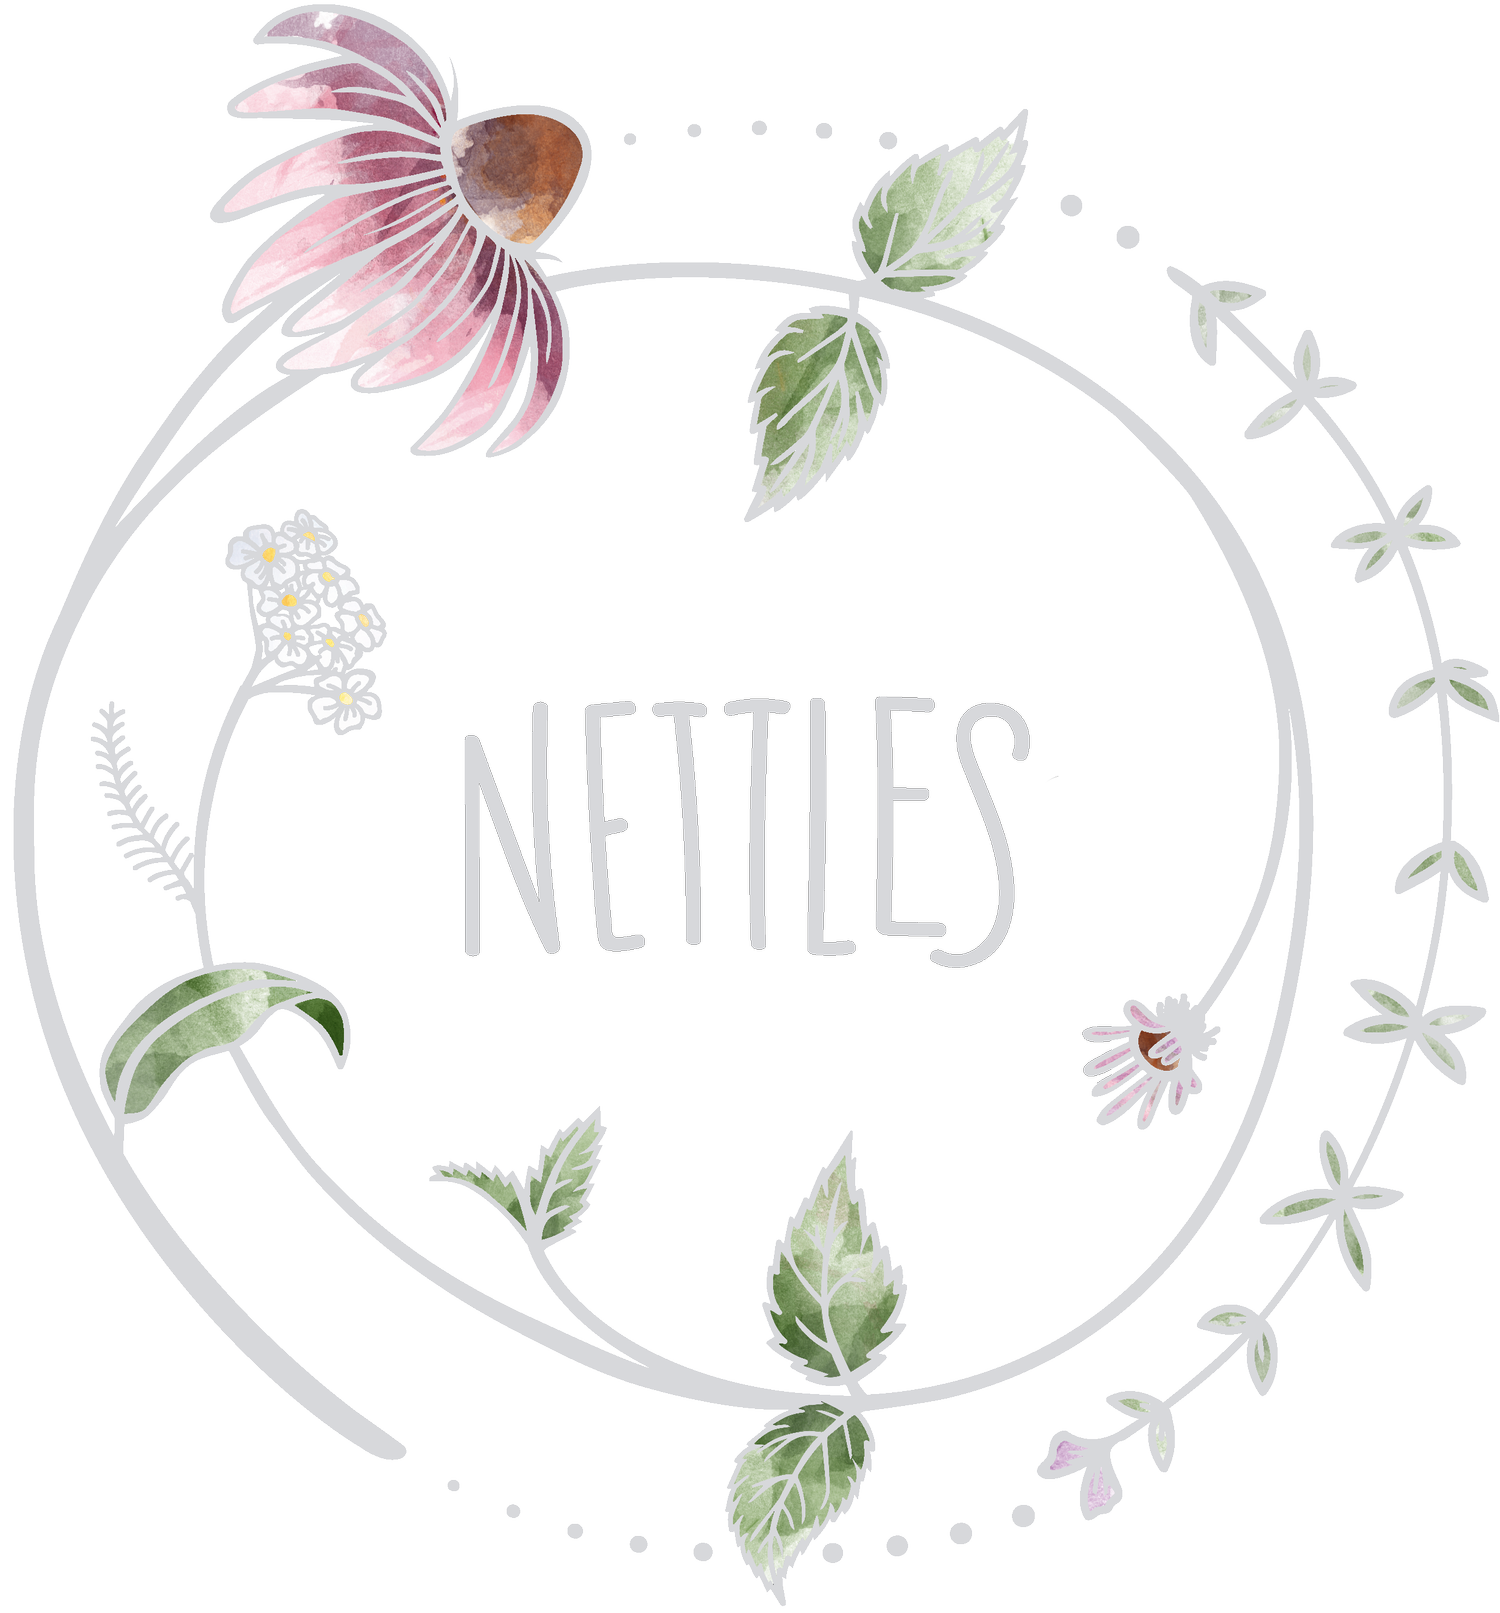 Nettles Nutrition